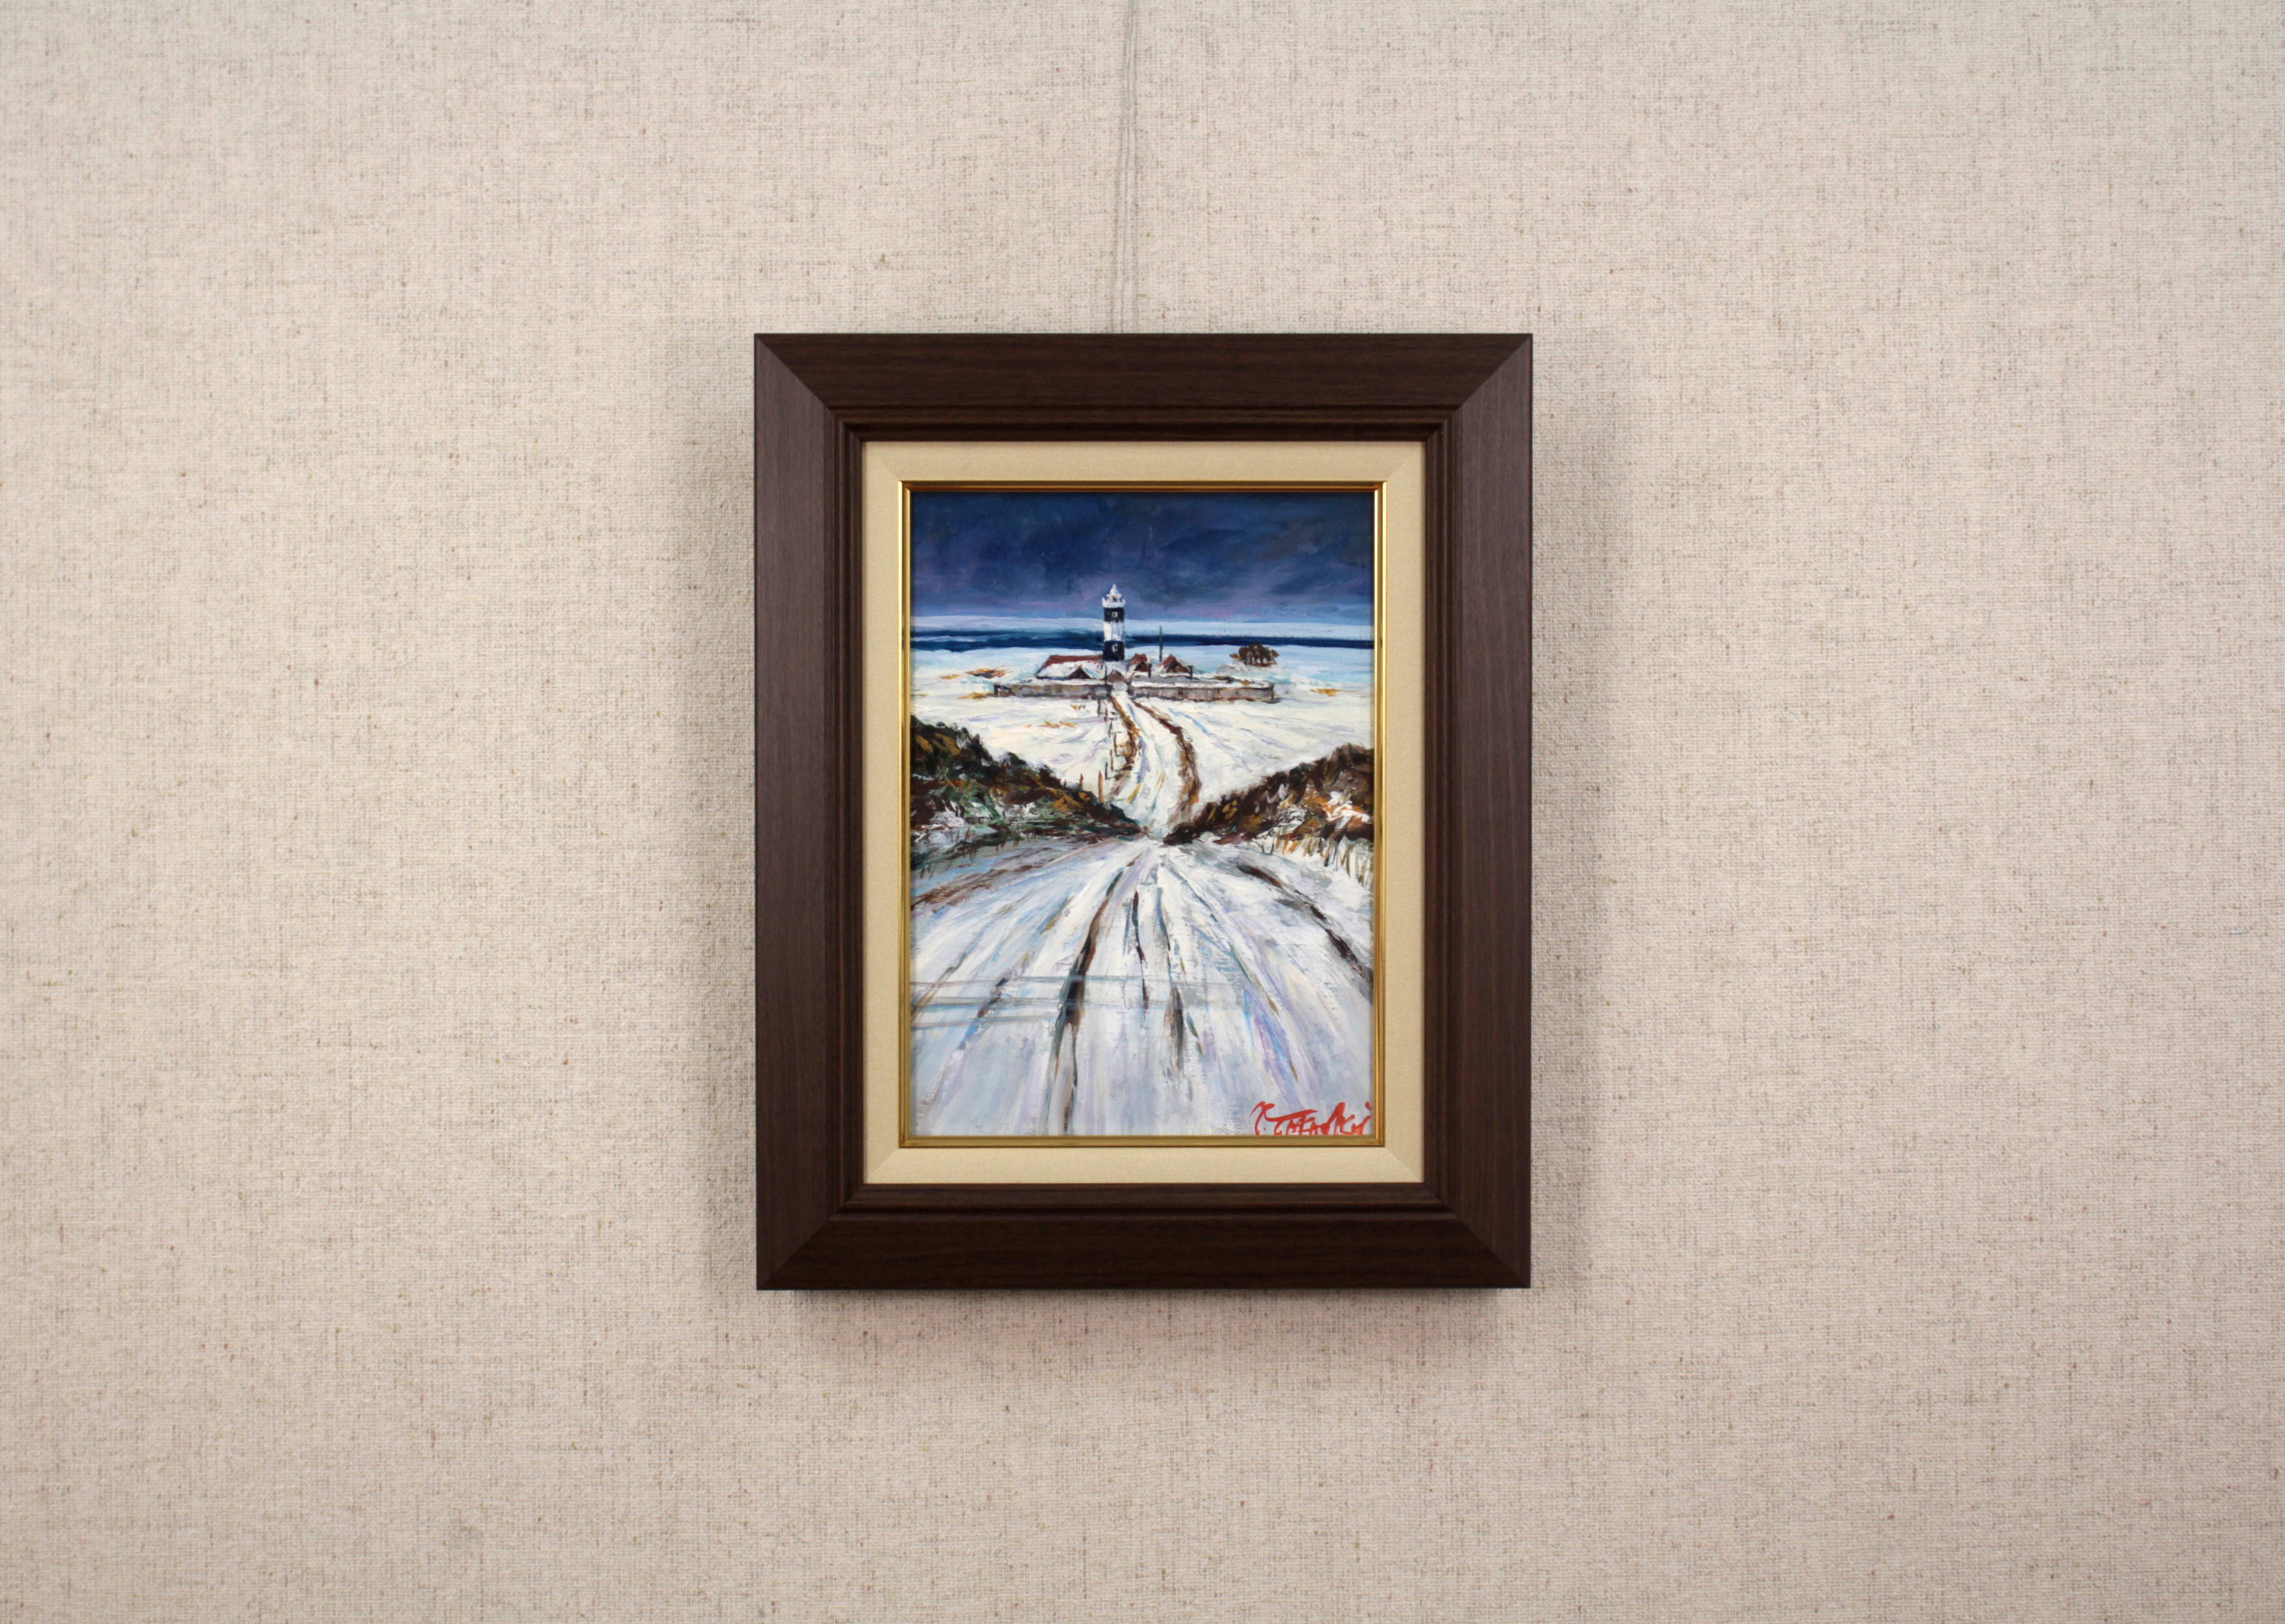 高橋益之 『灯台の道』 油彩画 - 北海道画廊